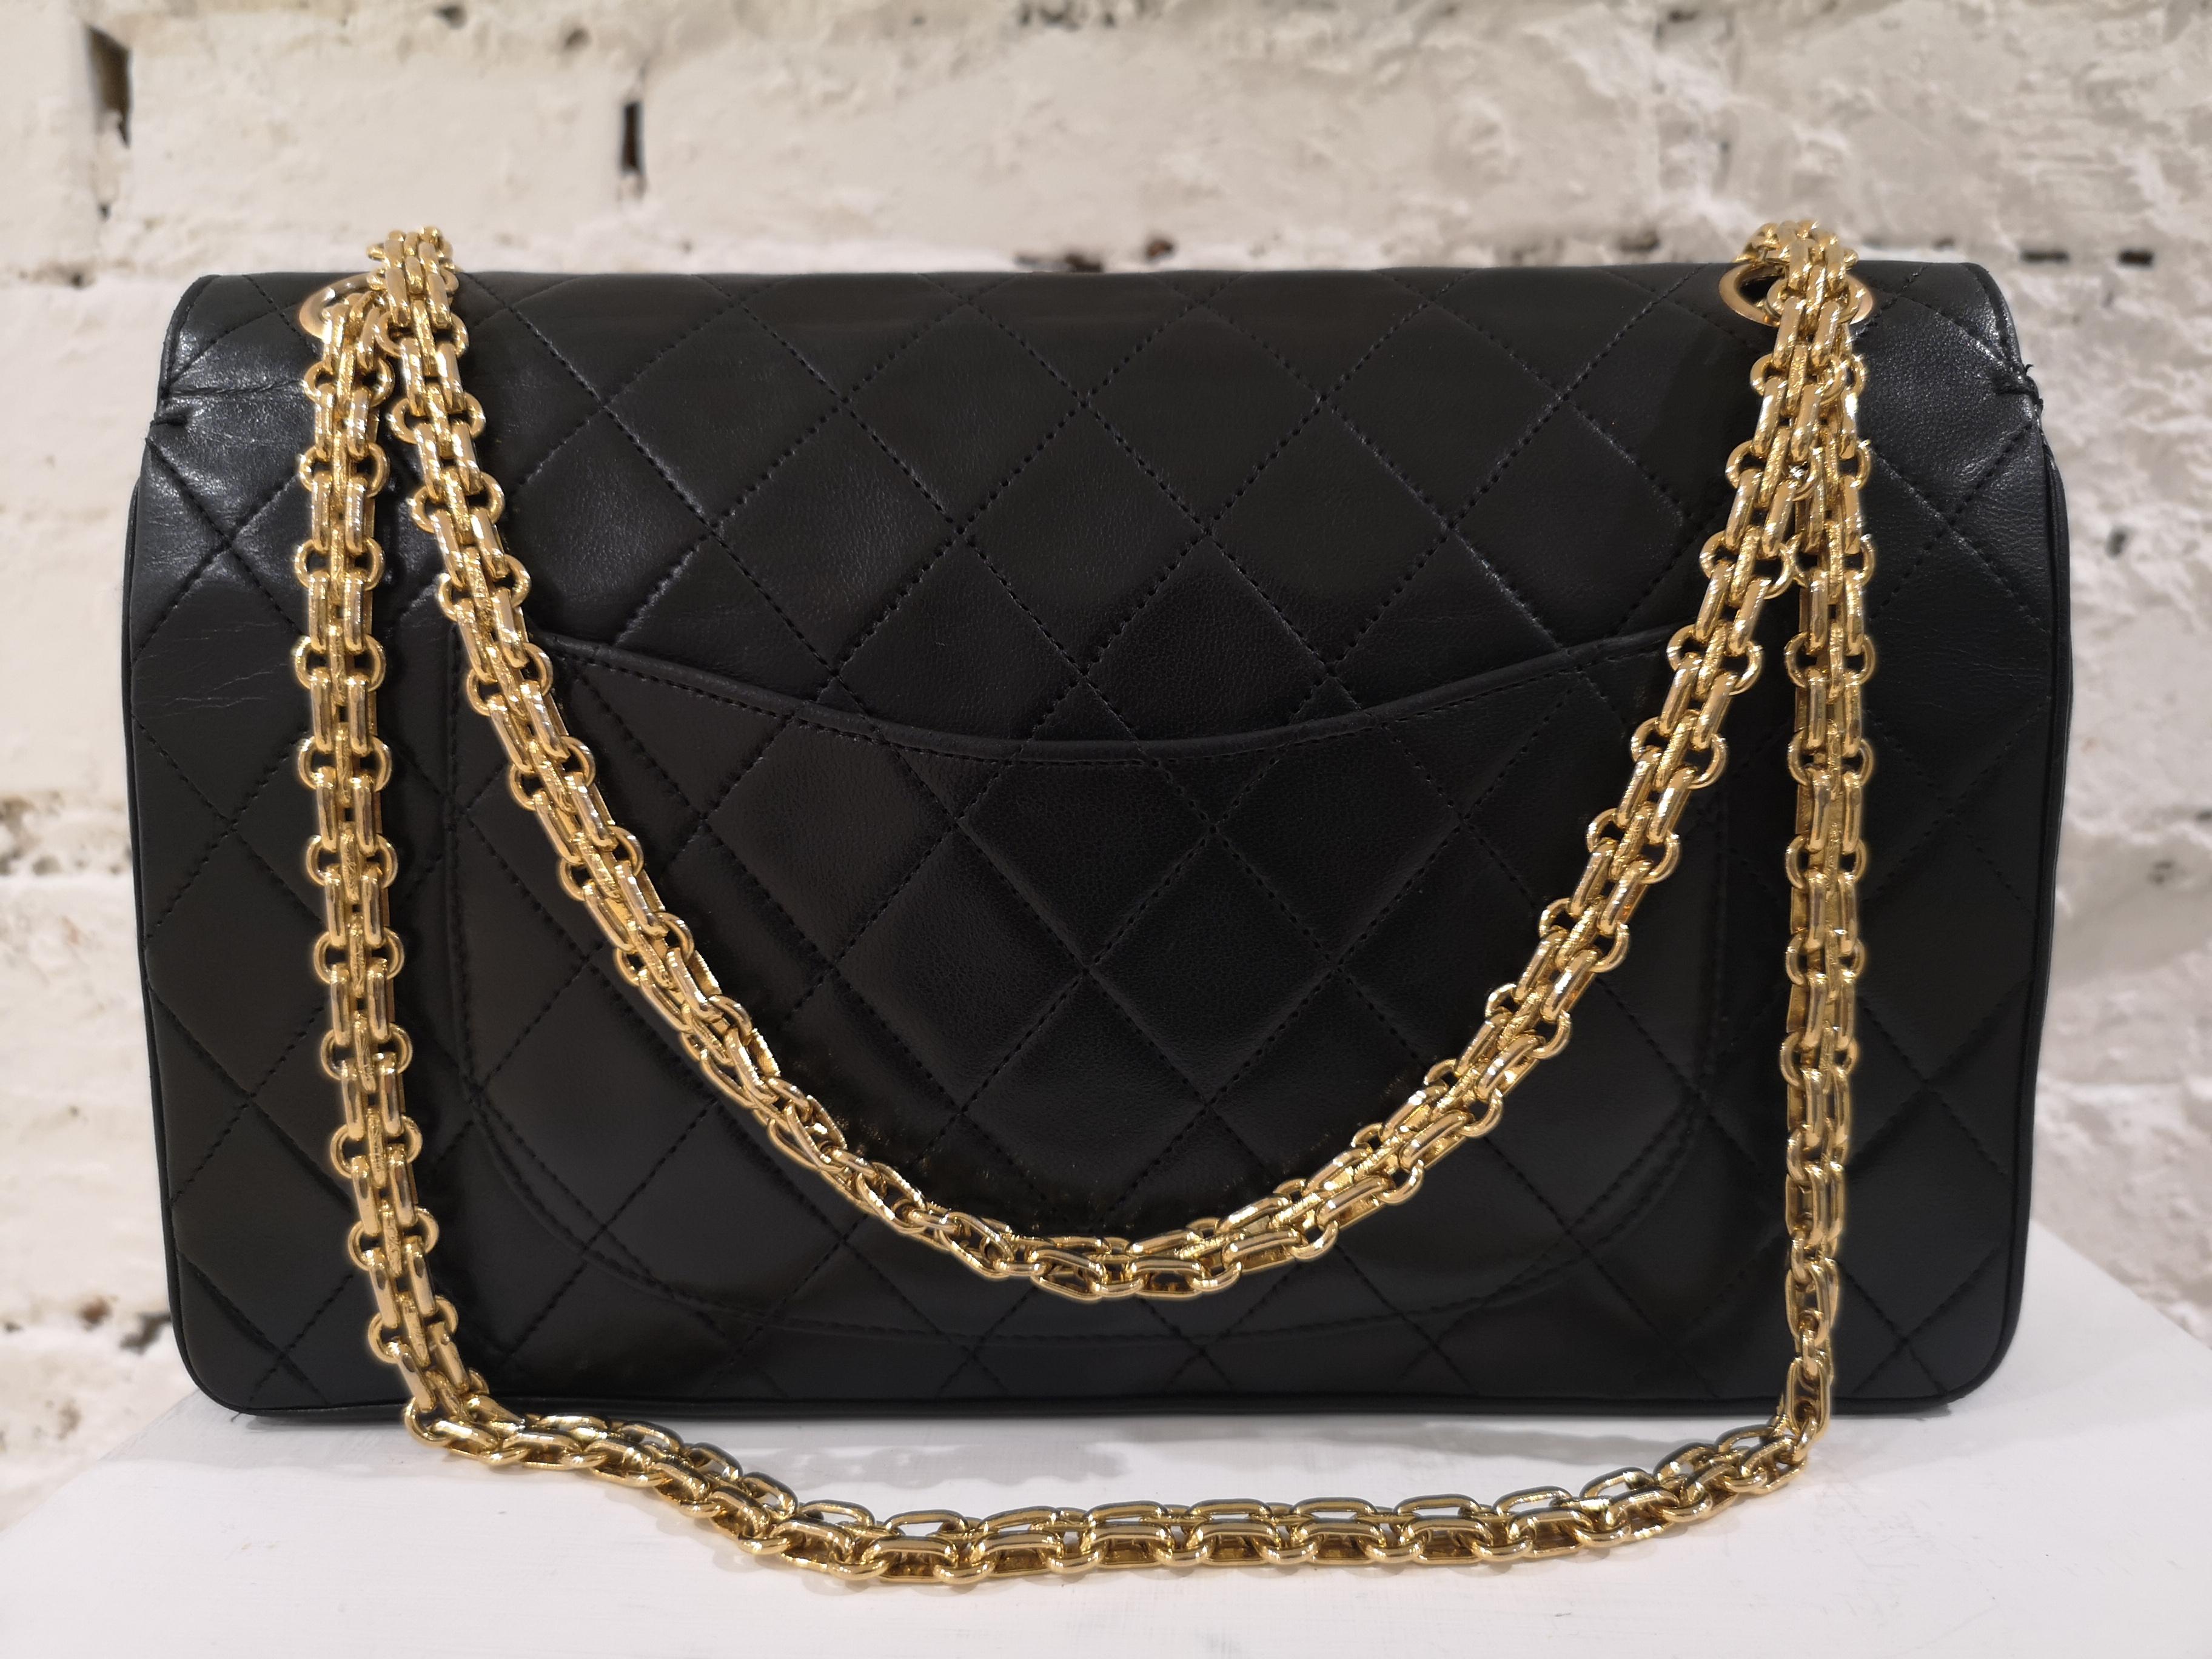 Chanel 2.55 Black Leather Shoulder Bag 1